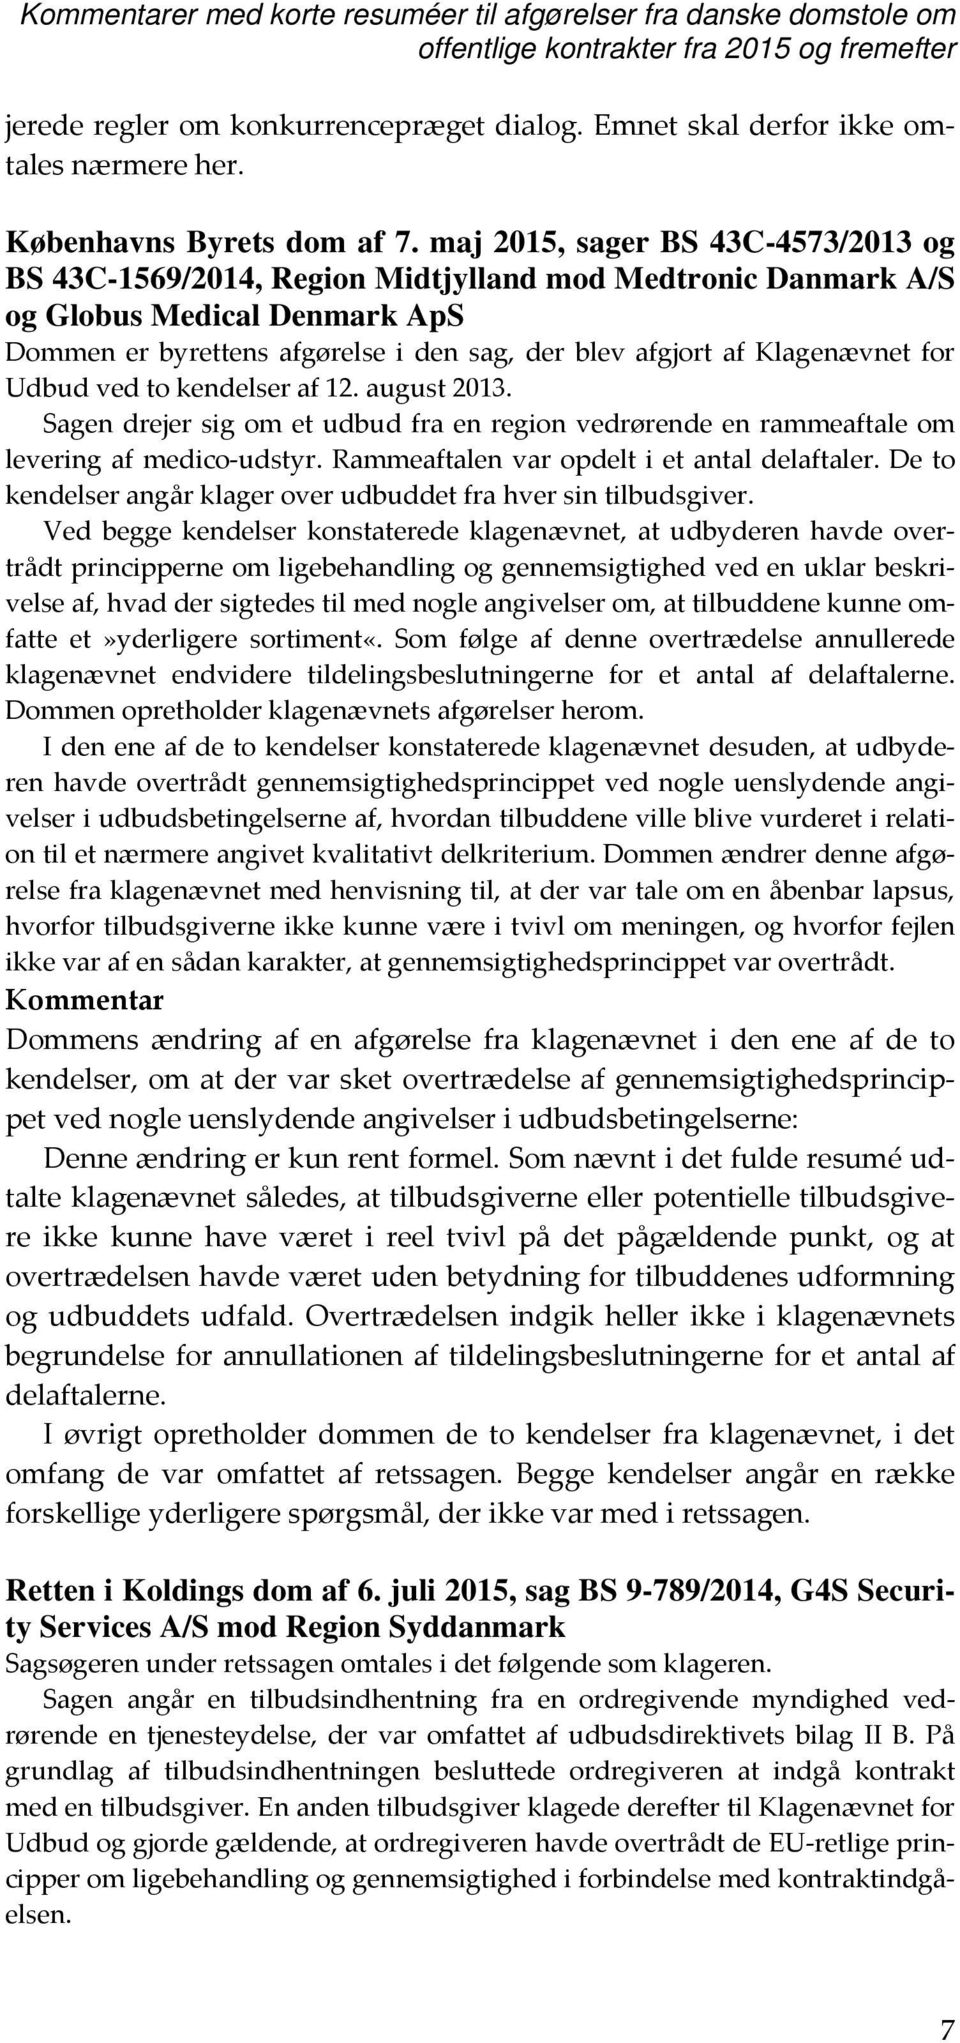 maj 2015, sager BS 43C-4573/2013 og BS 43C-1569/2014, Region Midtjylland mod Medtronic Danmark A/S og Globus Medical Denmark ApS Dommen er byrettens afgørelse i den sag, der blev afgjort af